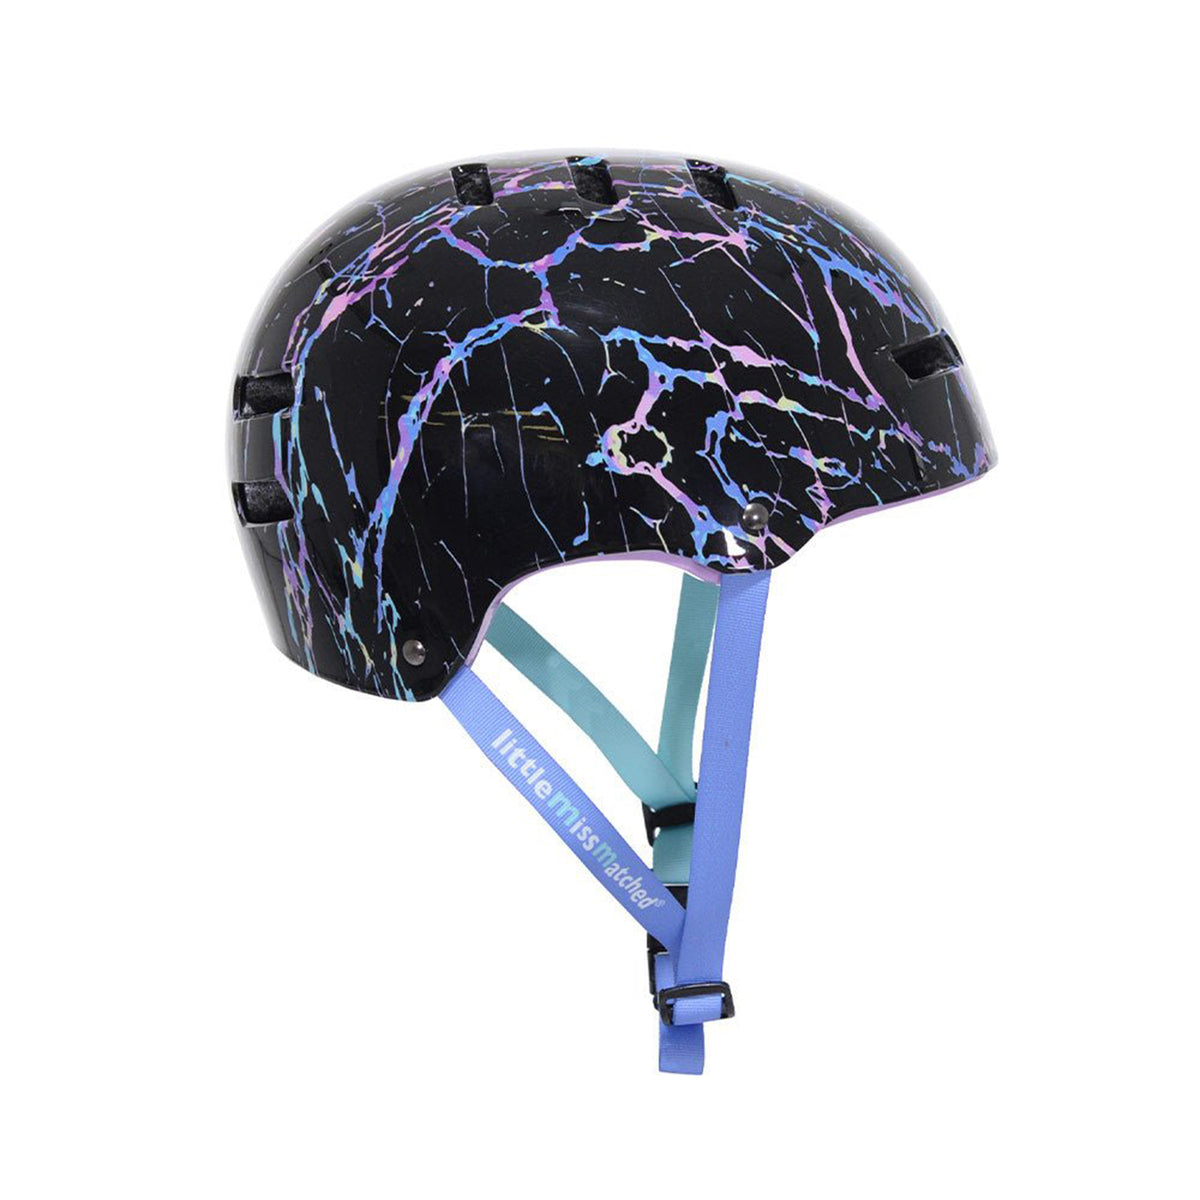 LittleMissMatched® Crackle Youth Multi-Sport Helmet | Helmet for Kids Ages 8+